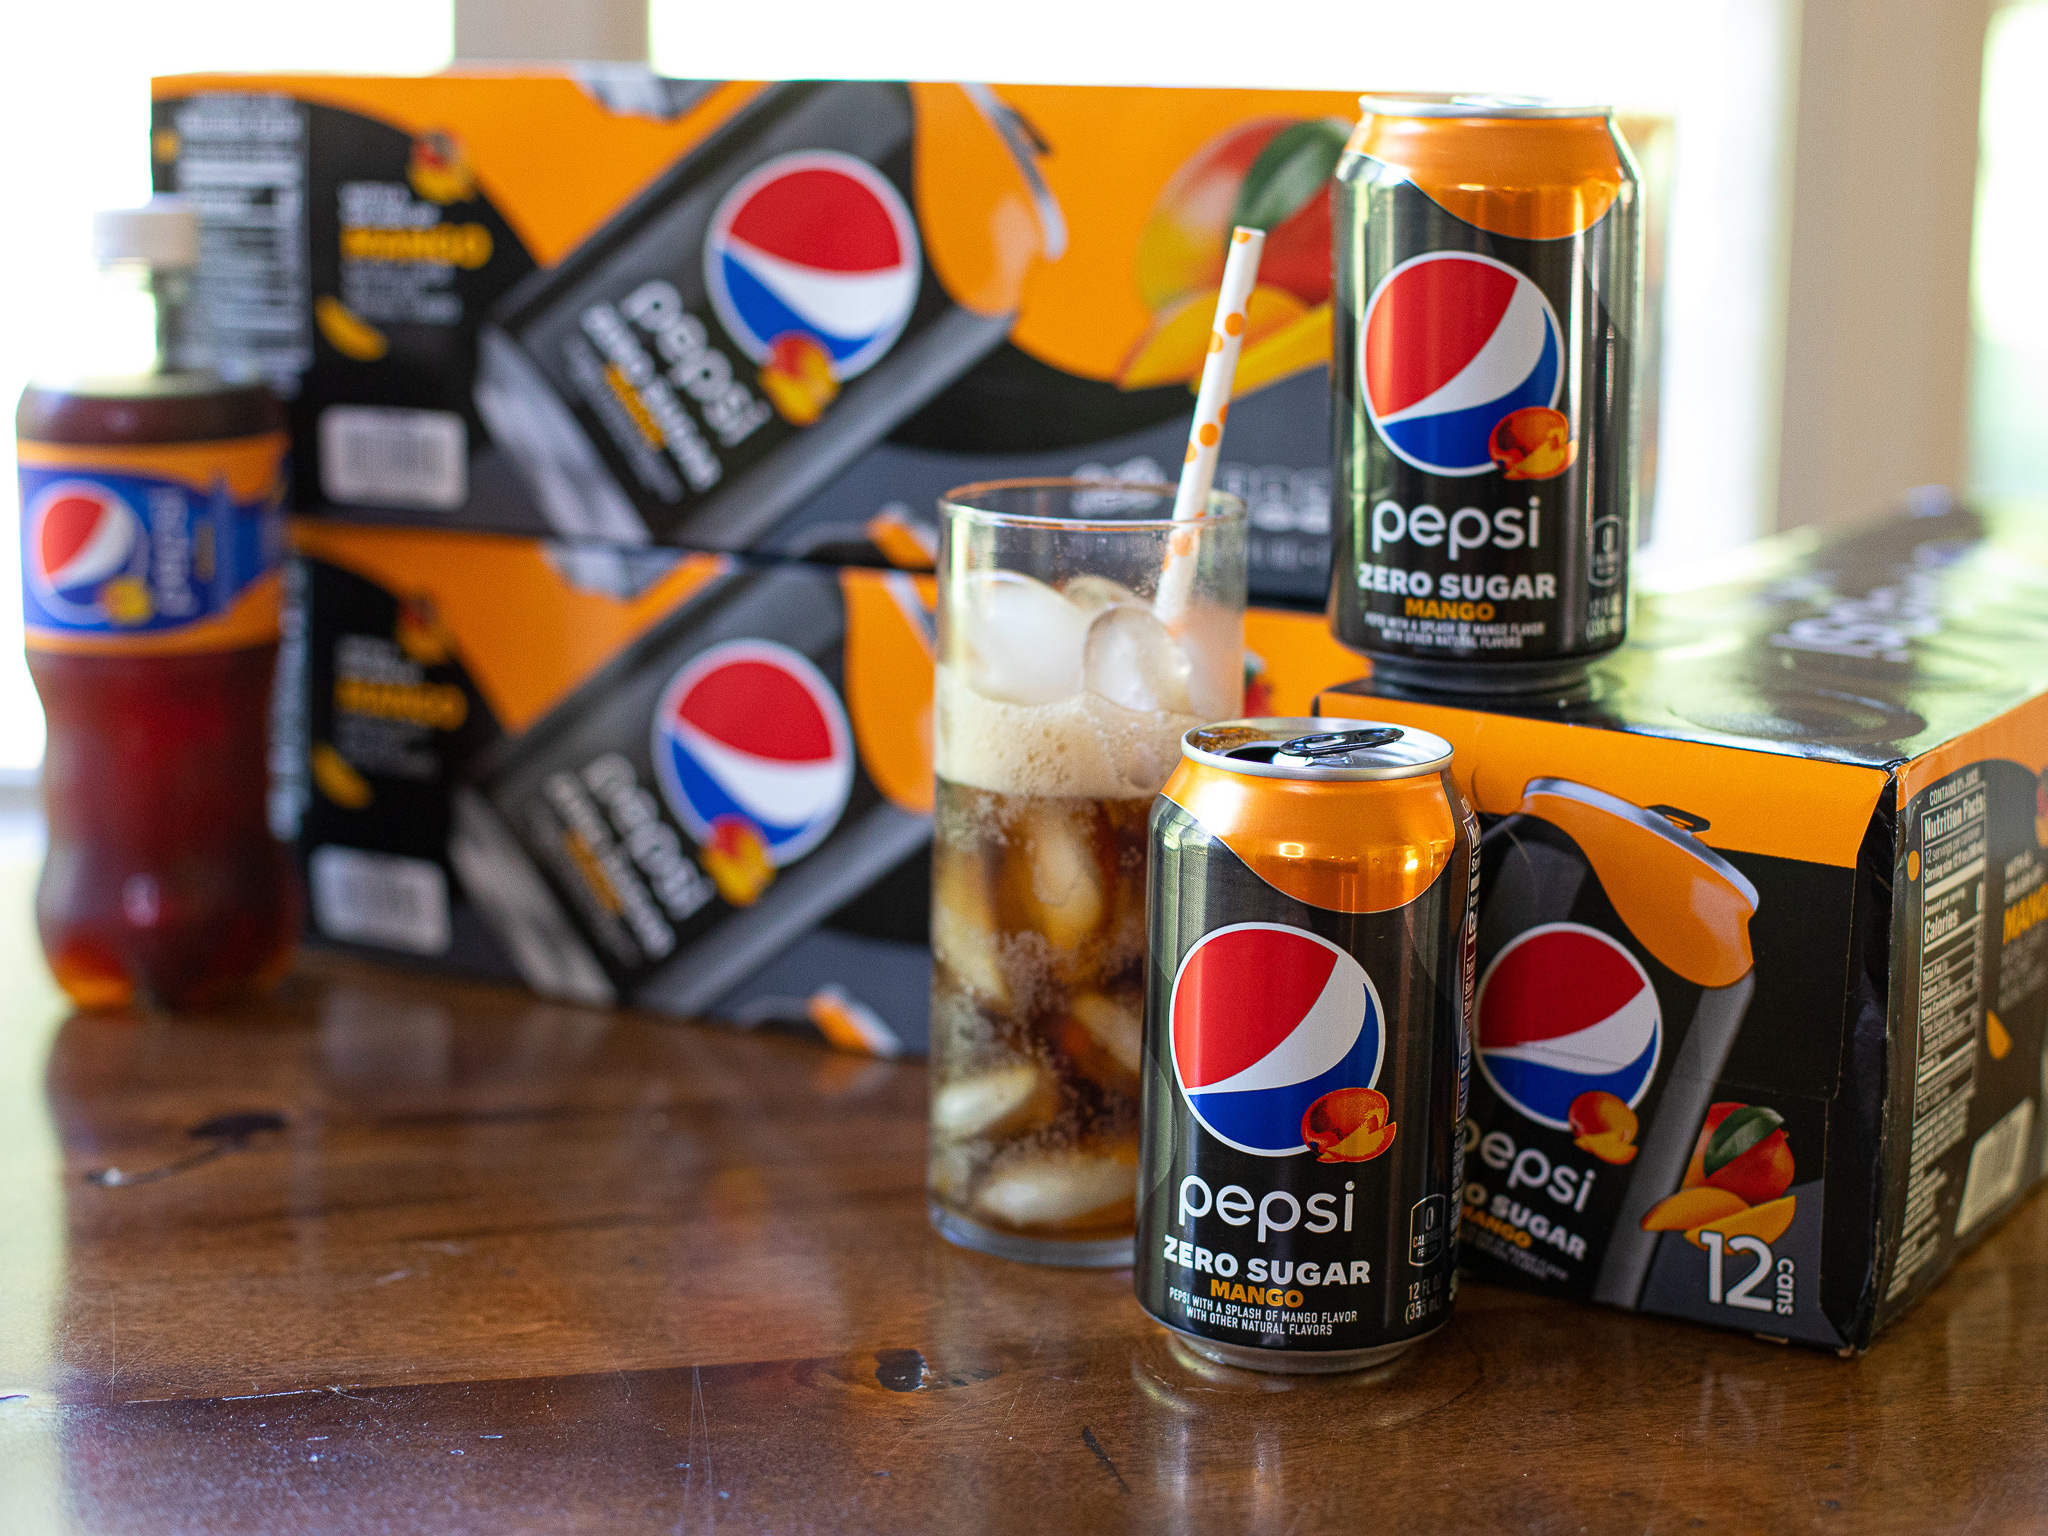 Get Pepsi Zero Sugar 15-Packs For As Low As $1.75 At Kroger (Regular Price $7.99)